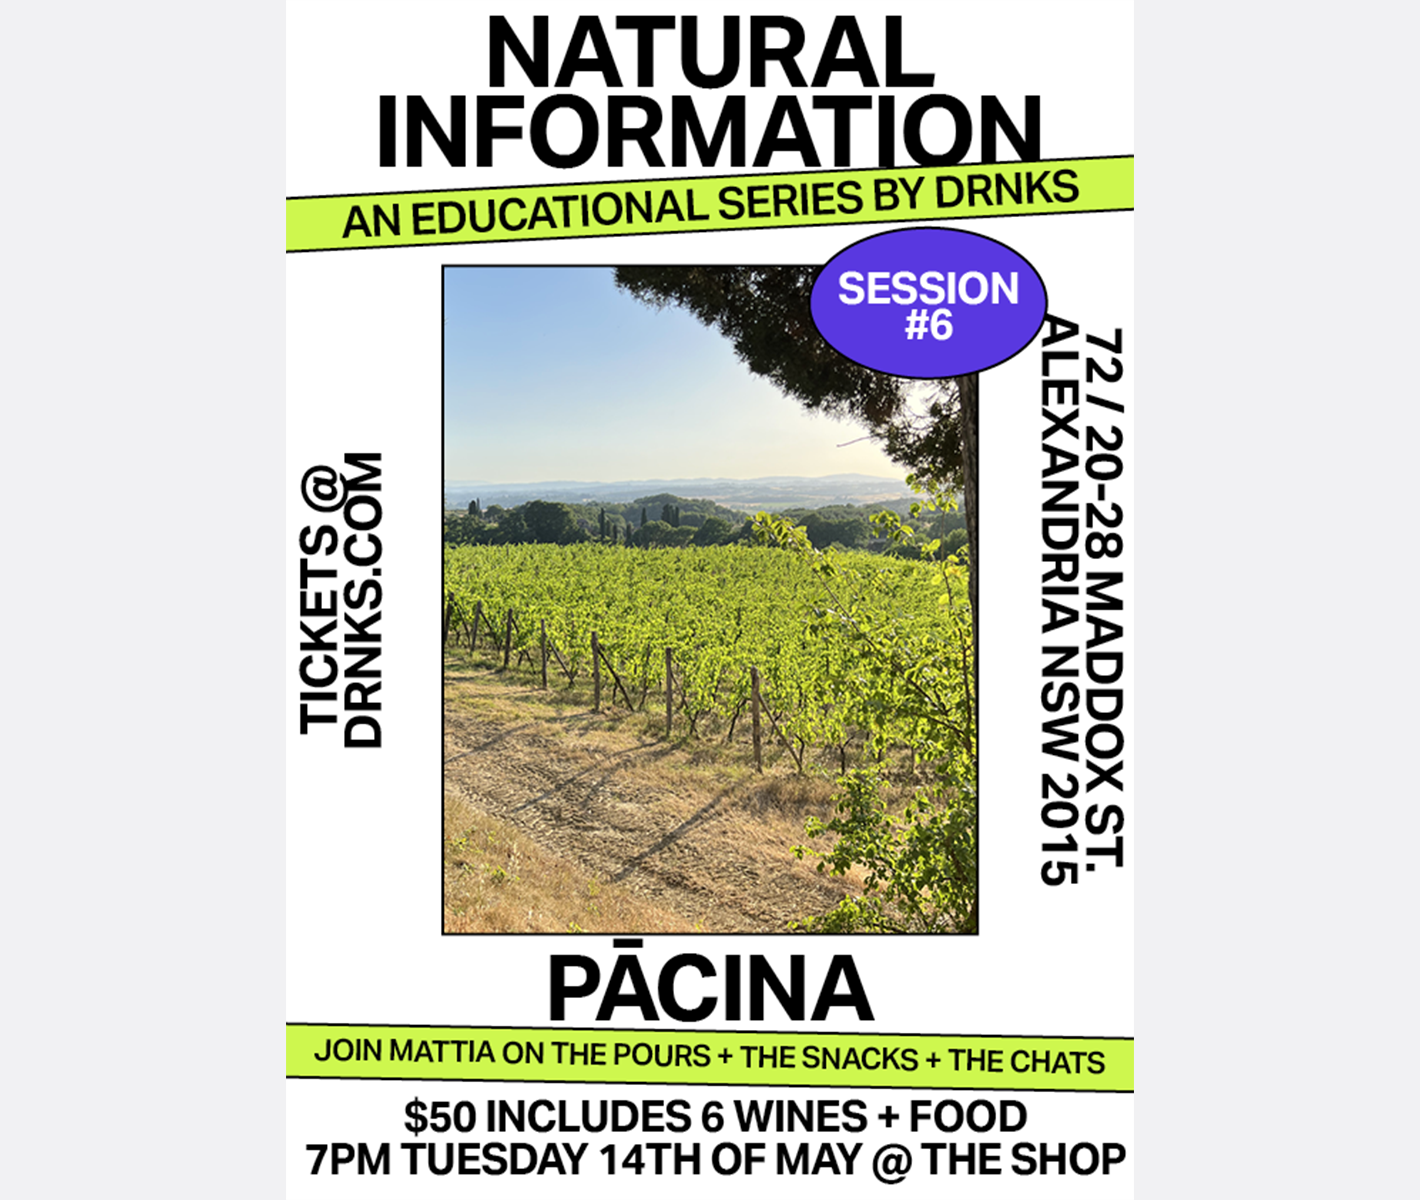 Natural Information Session #6 - Pācina